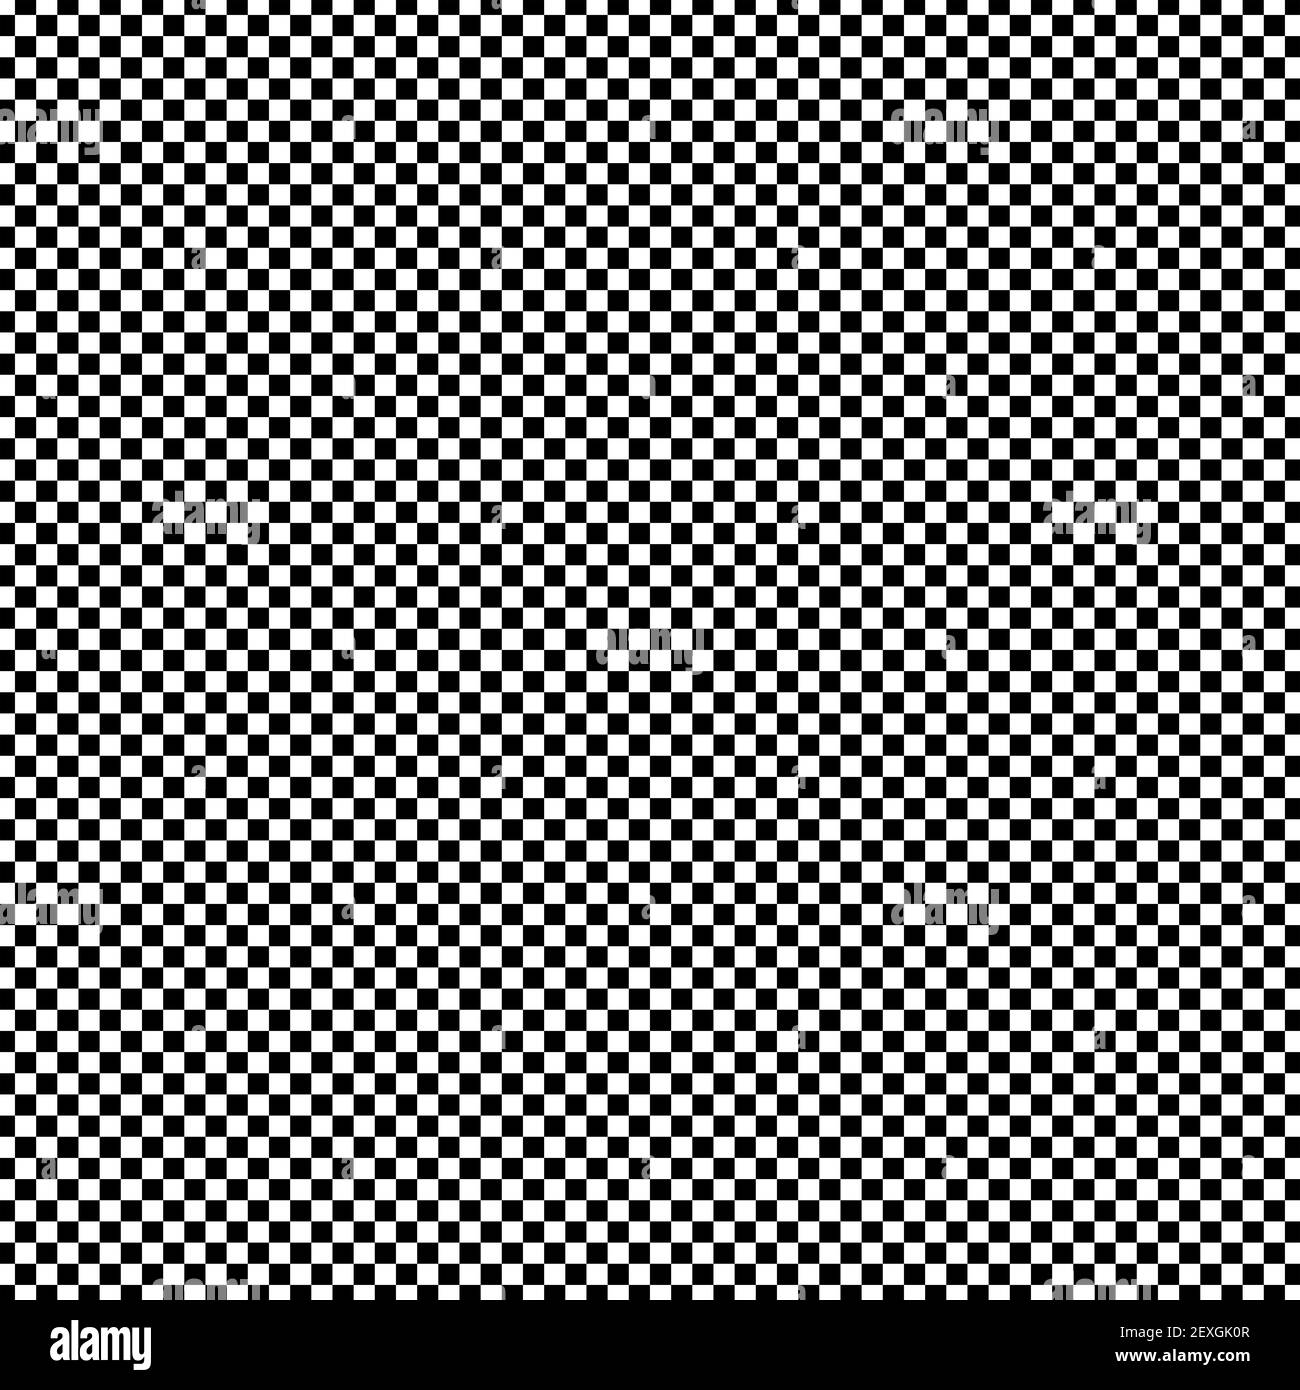 Sehr kleine Squared in einem Schwarz-Weiß-Schachmuster Stockfoto